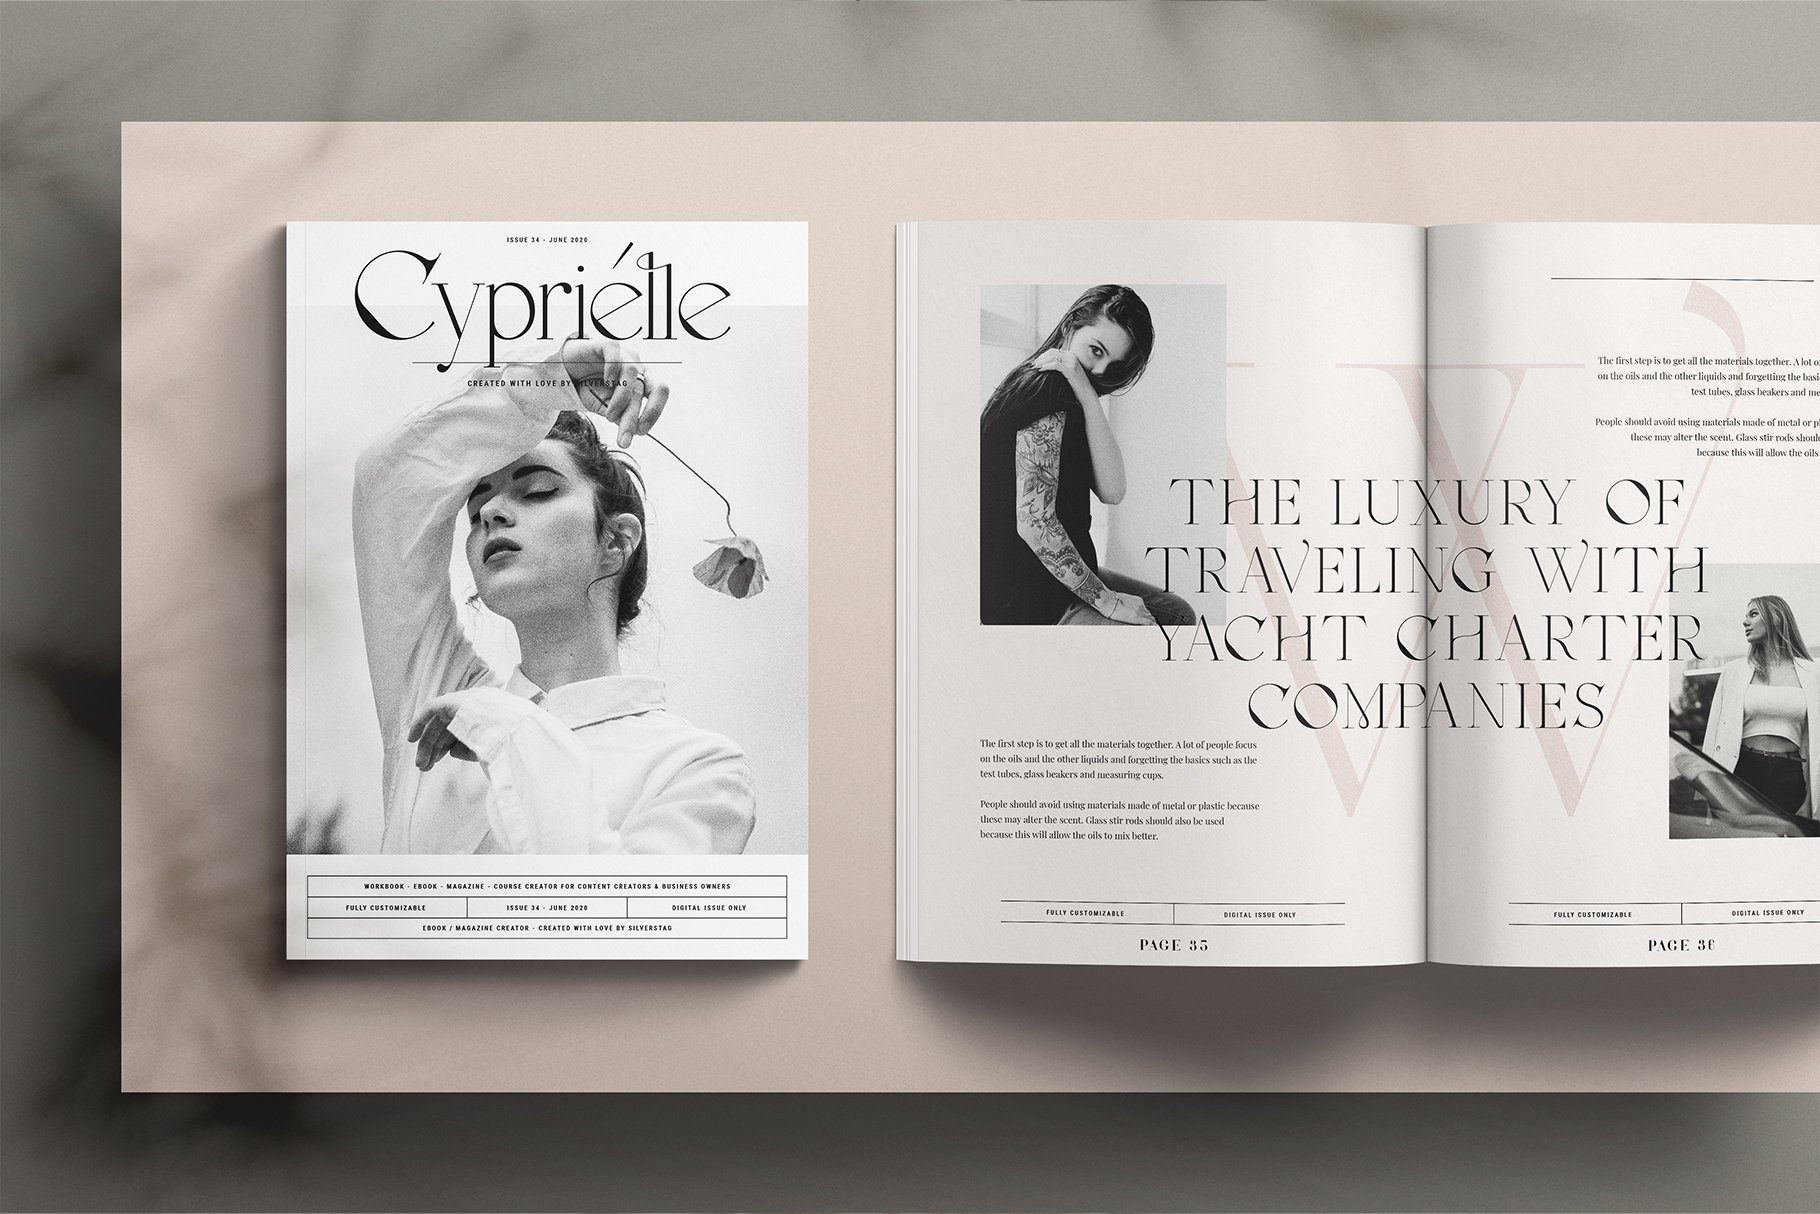 Elegant font for the fashionable magazine.